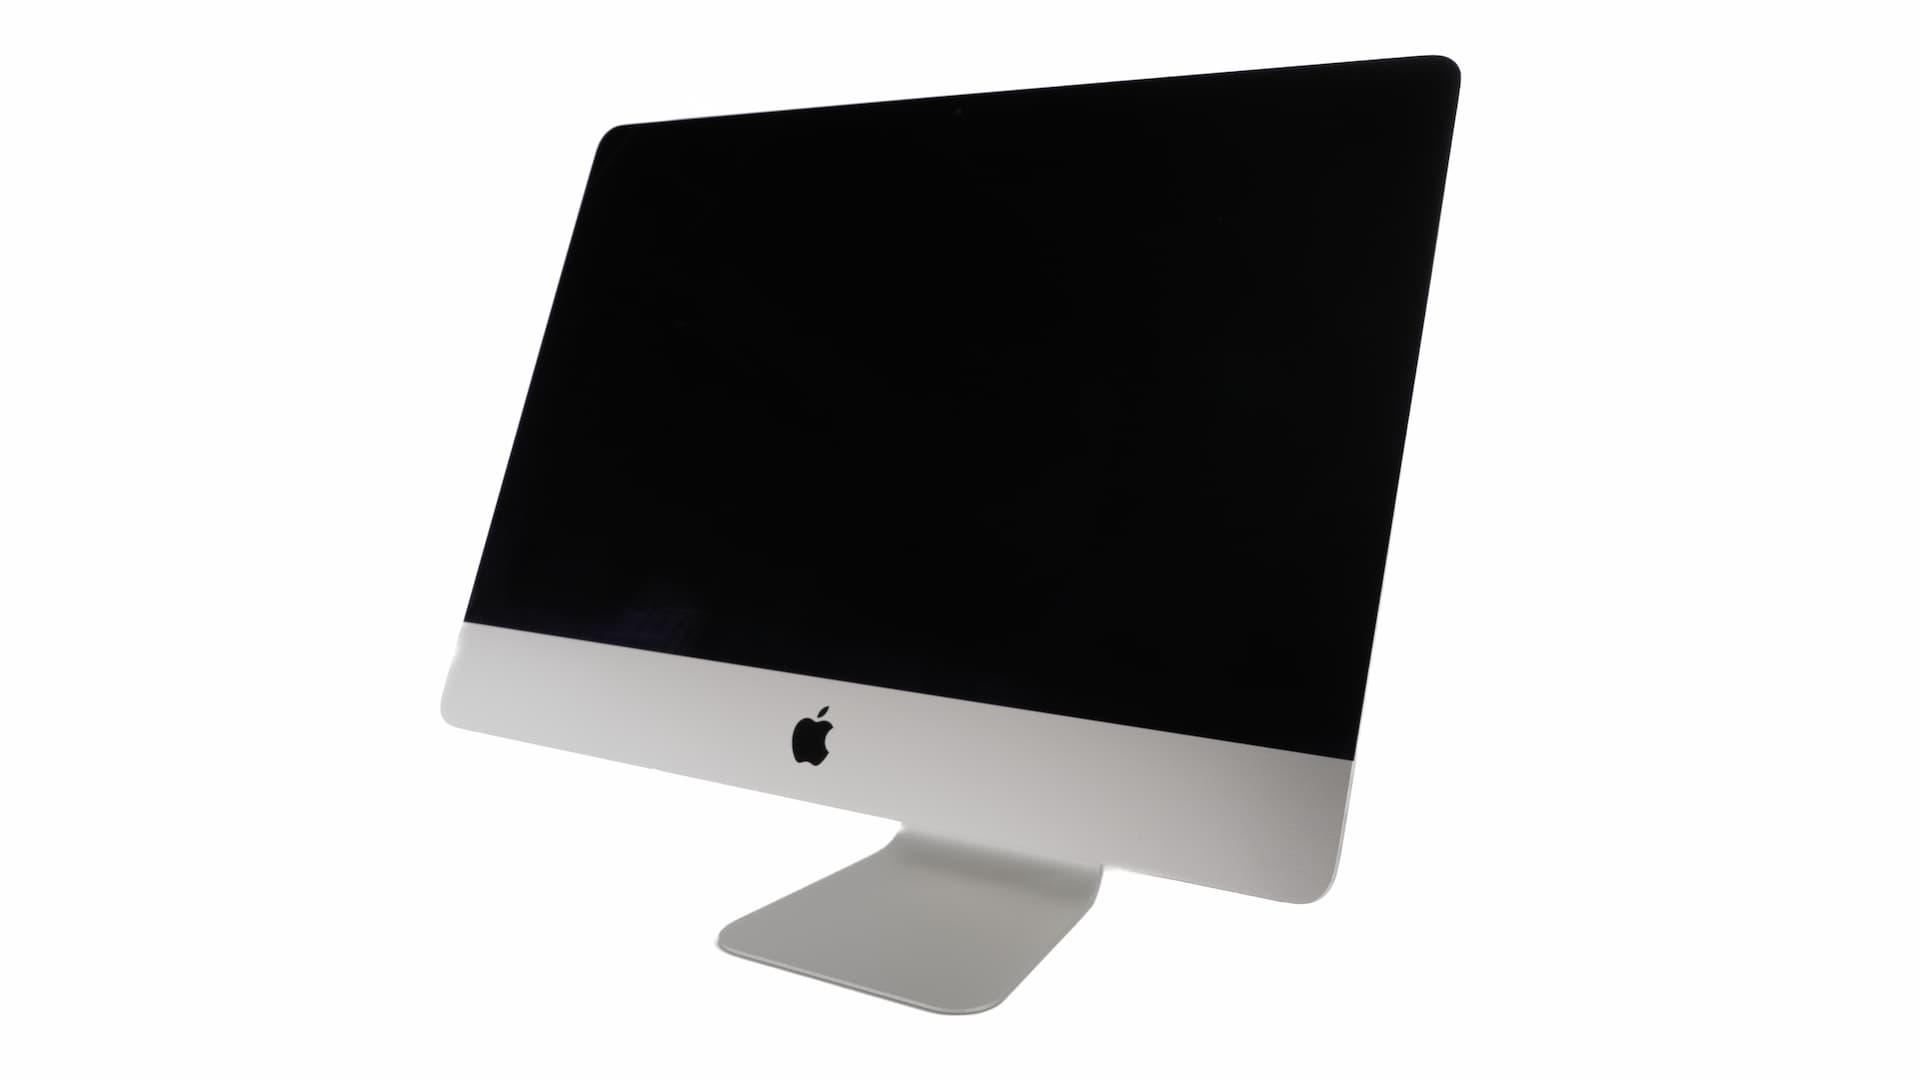 iMac-standard-1.jpg Brugte computere